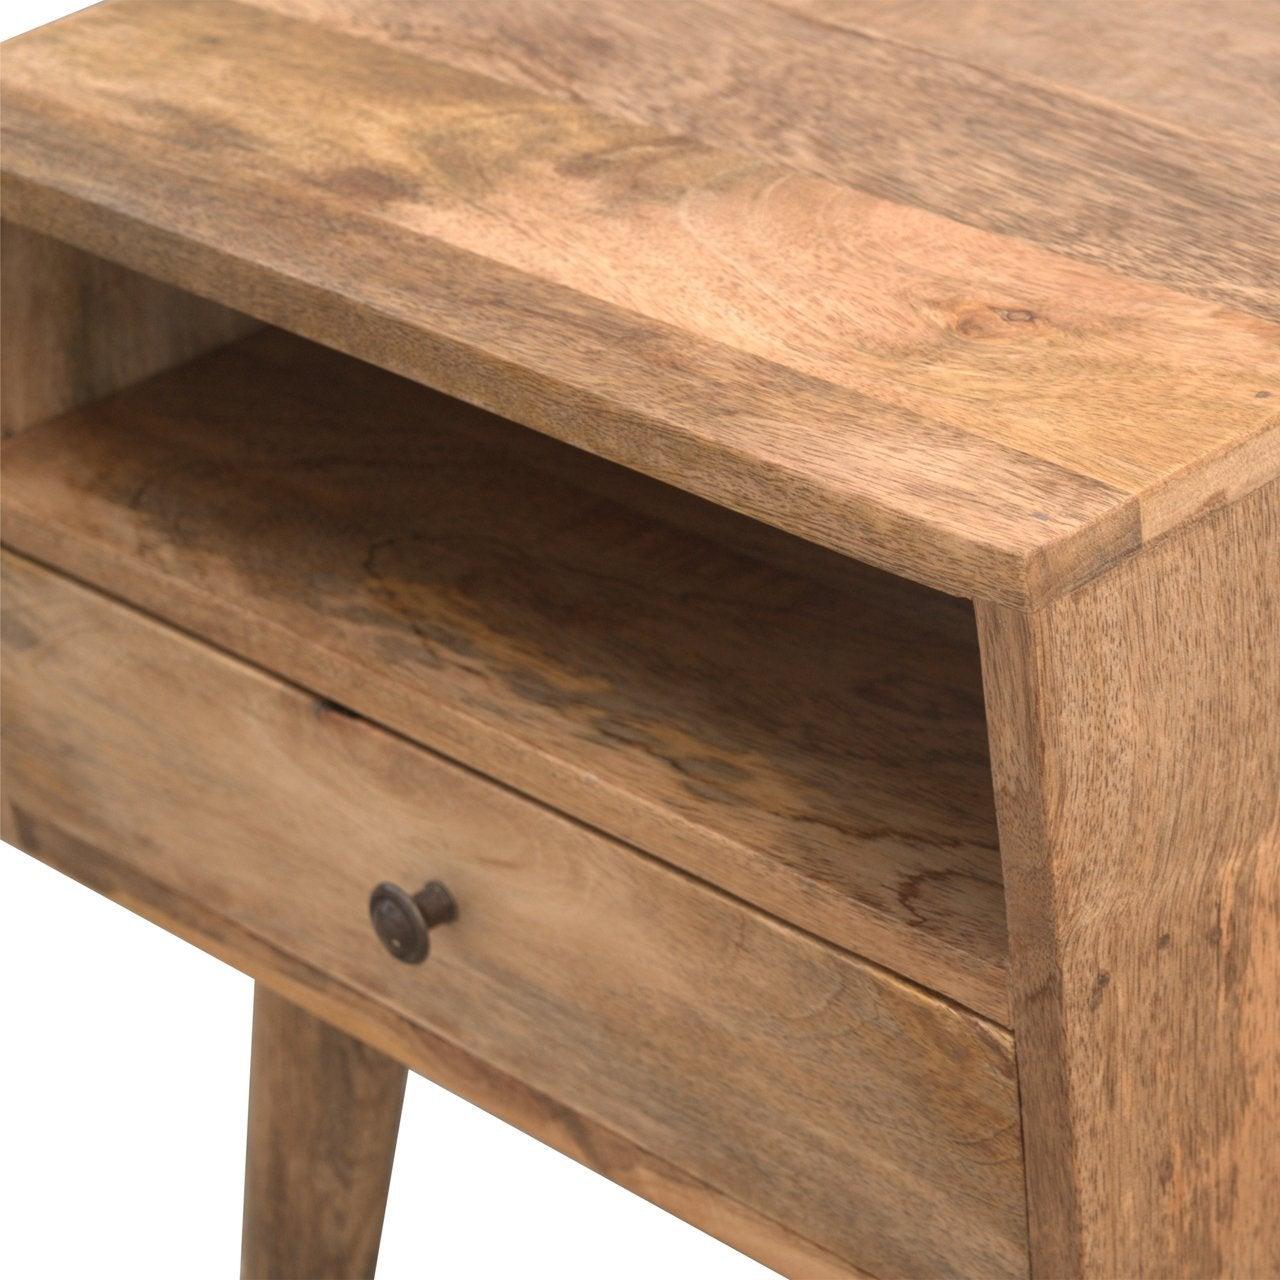 Modern solid wood bedside table with open slot - crimblefest furniture - image 7